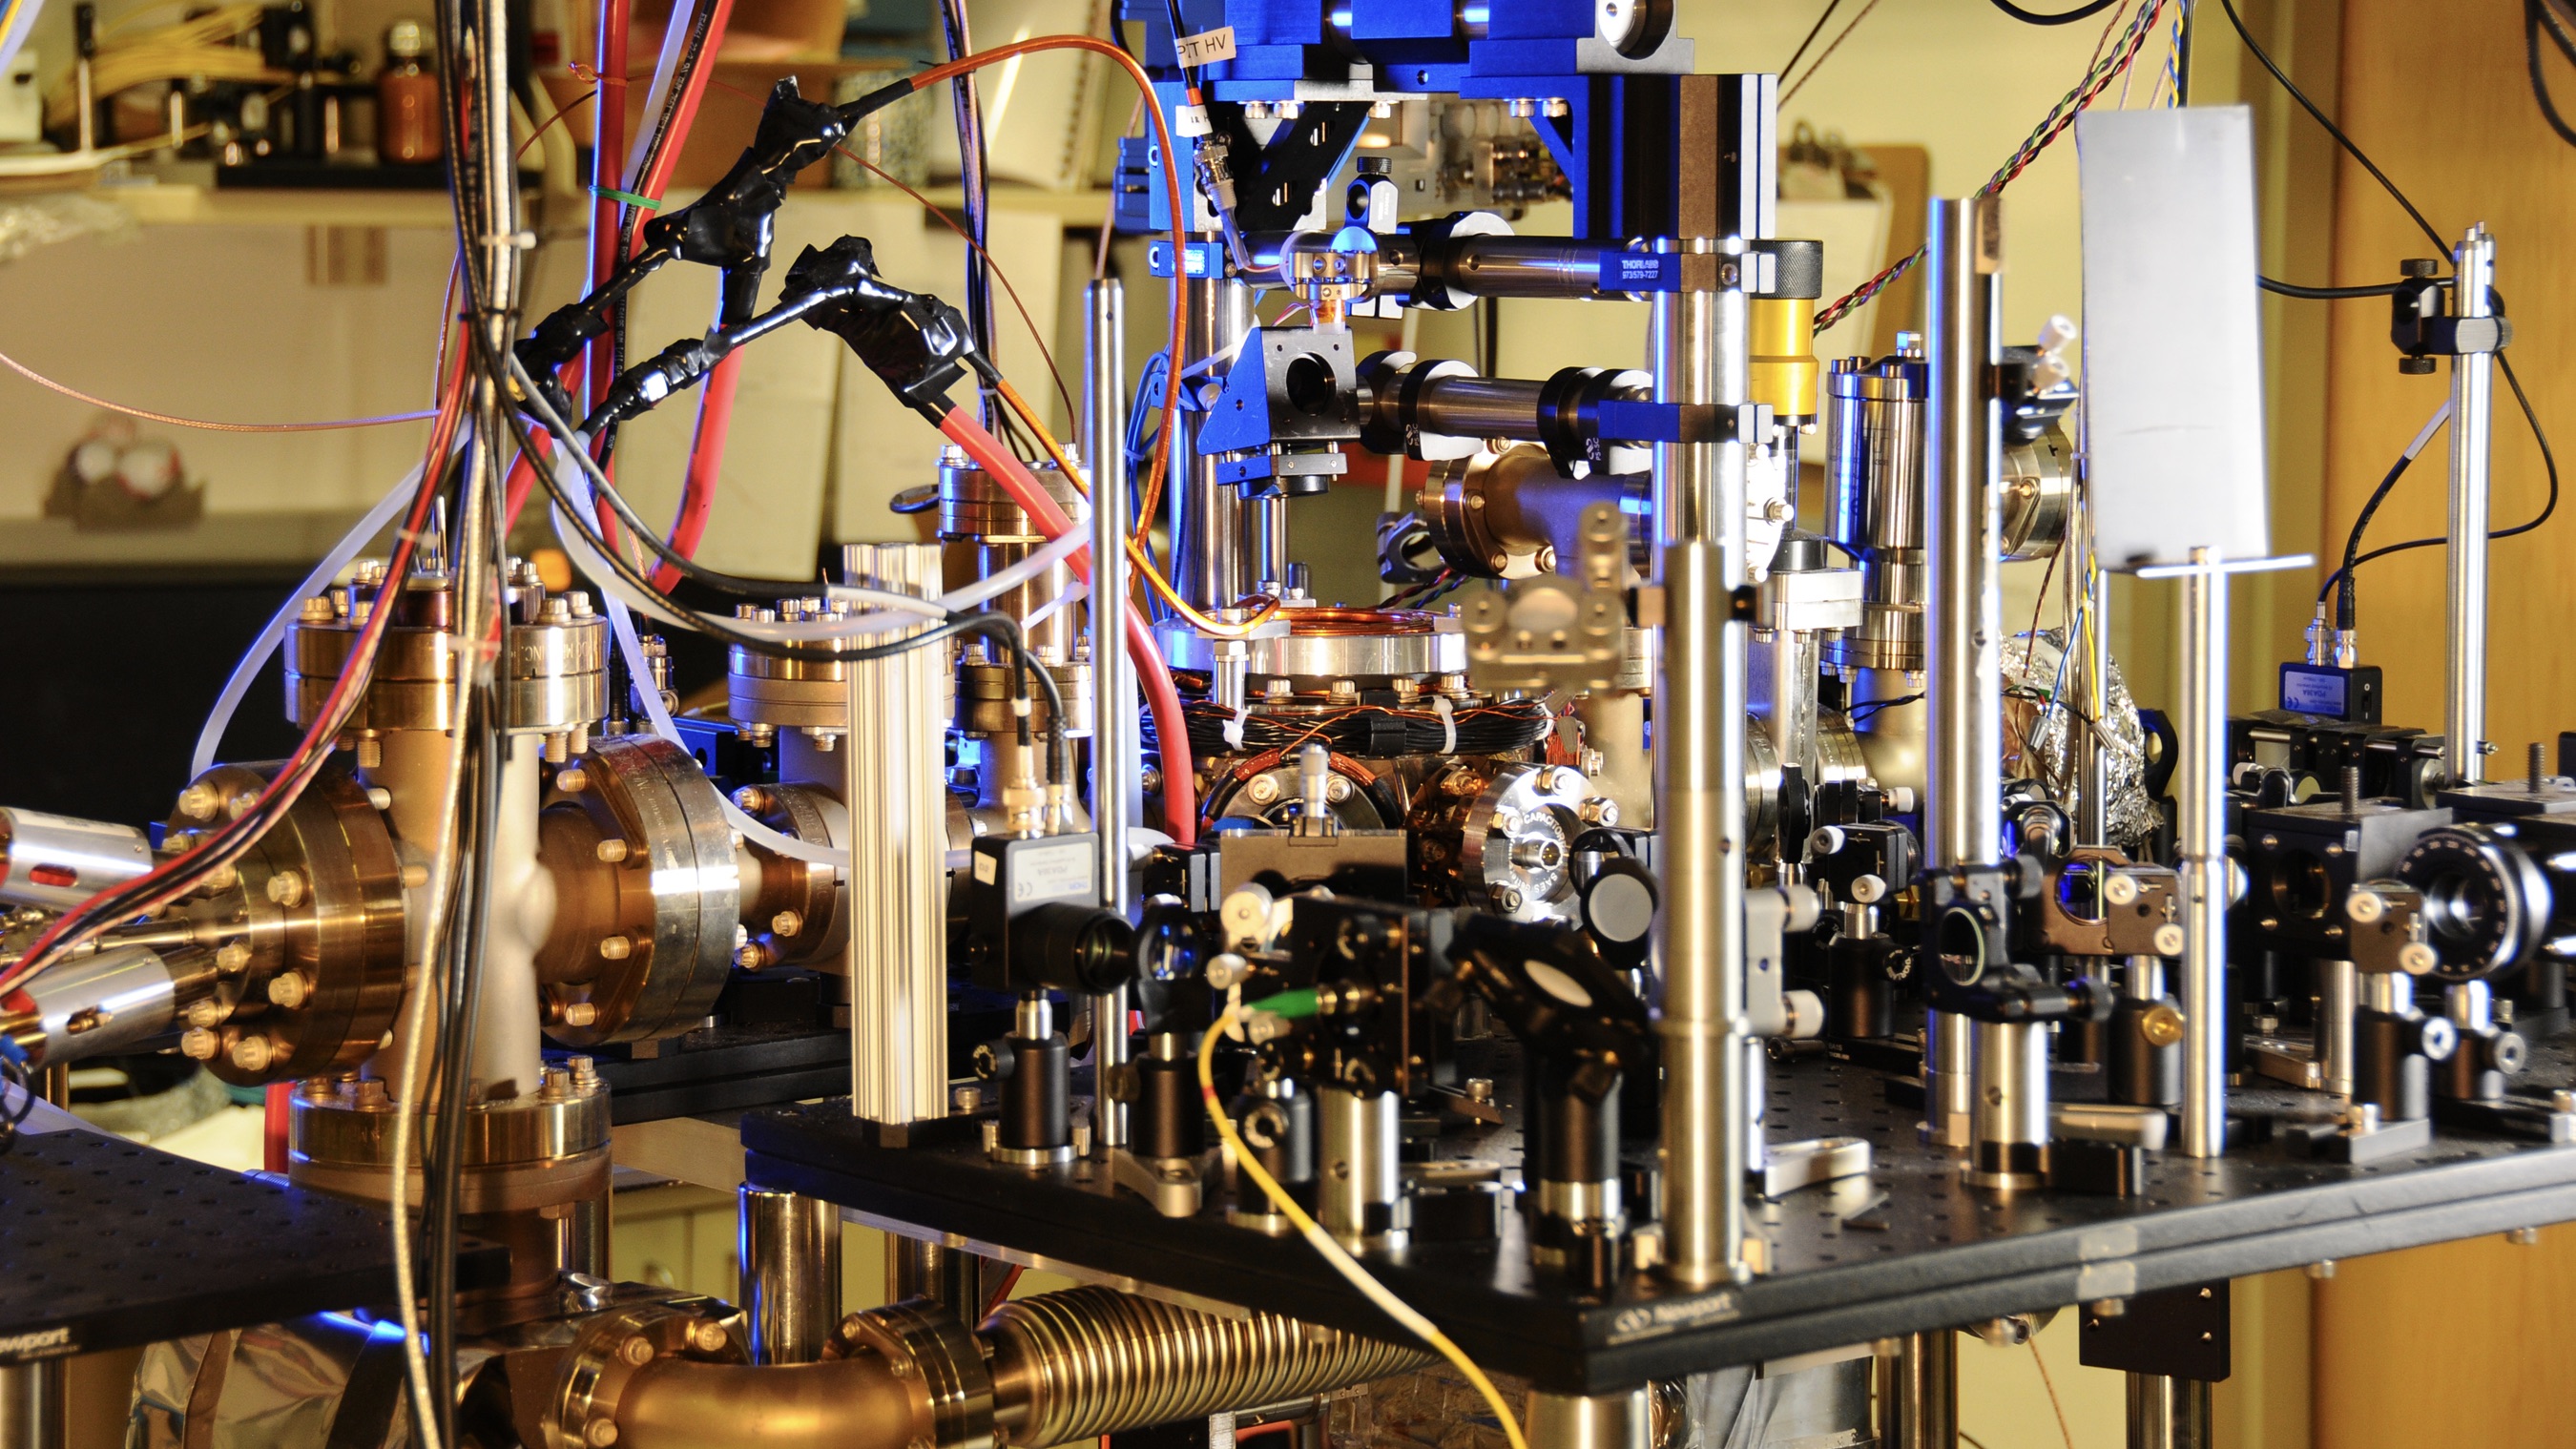 A National Institute of Standards and Technology laboratóriumában található itterbiumalapú atomóra.